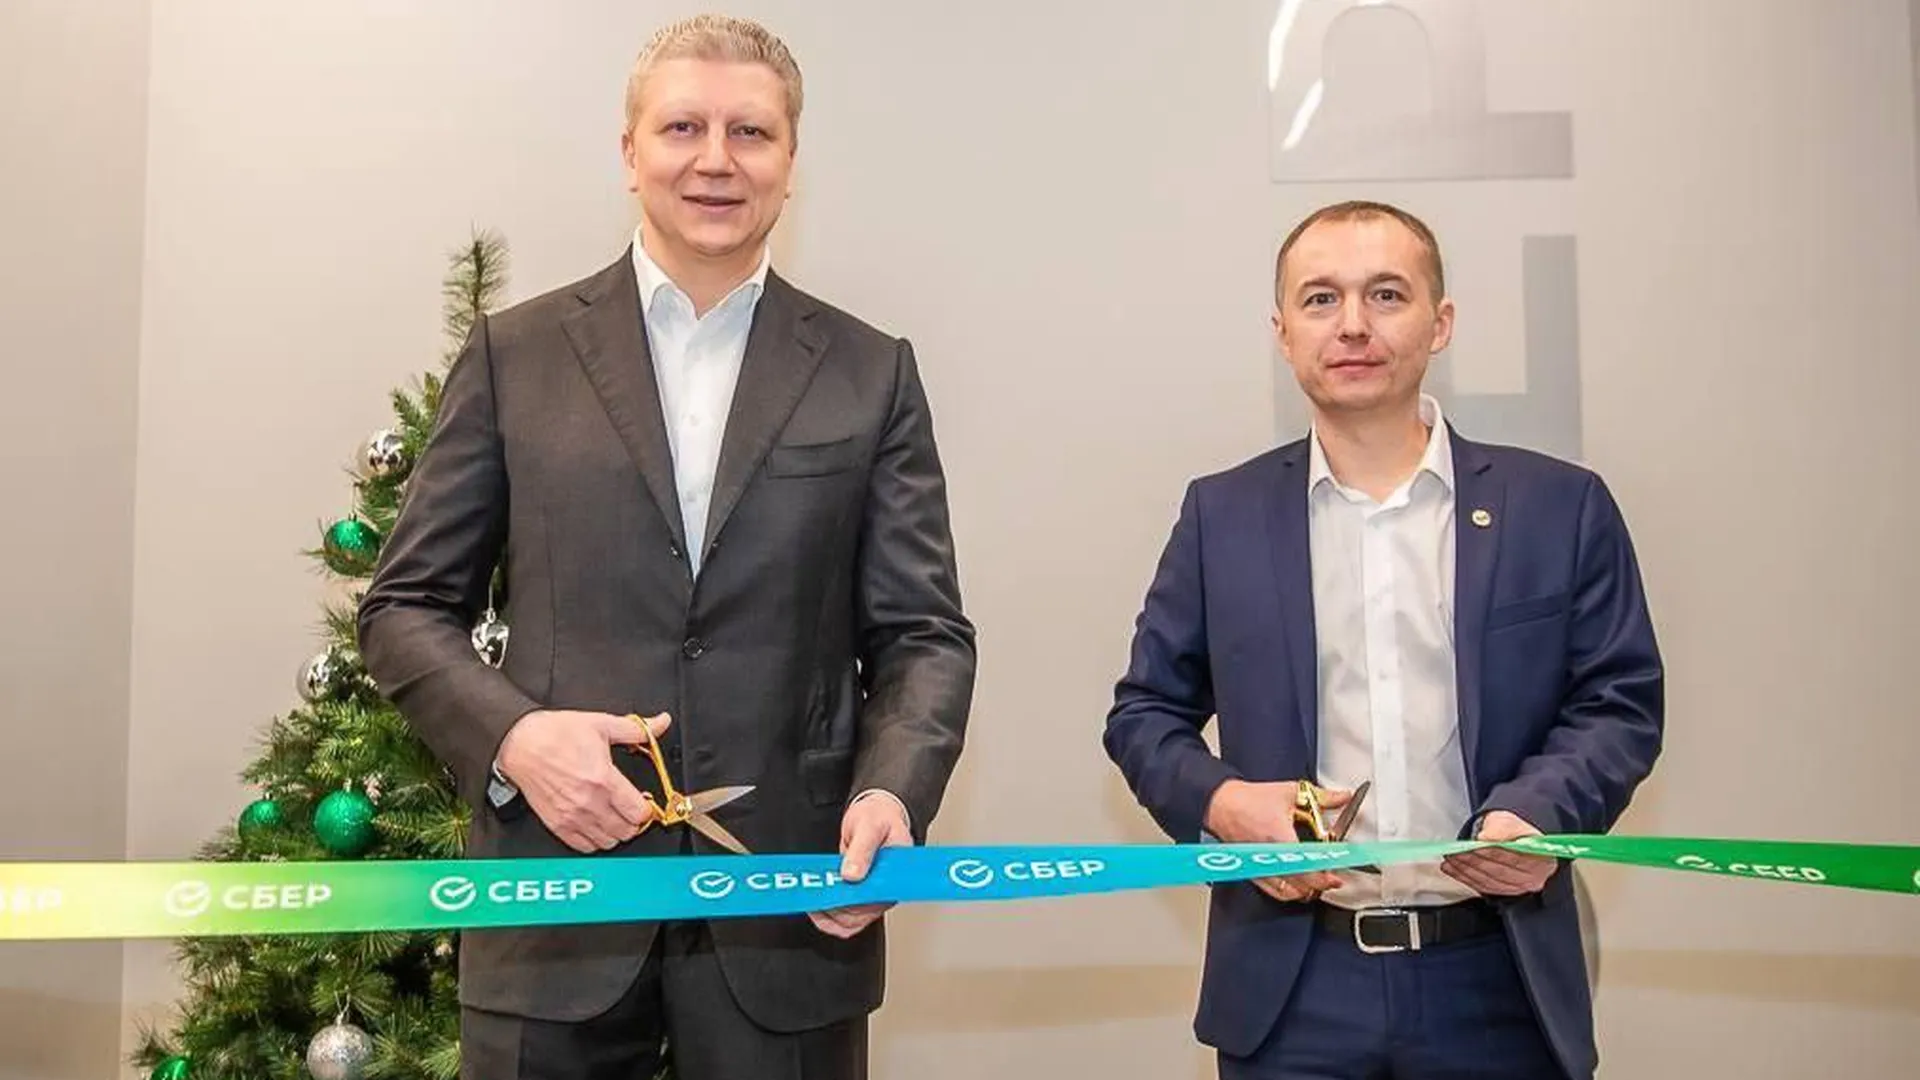 Сбер открыл офис нового формата в Звенигороде